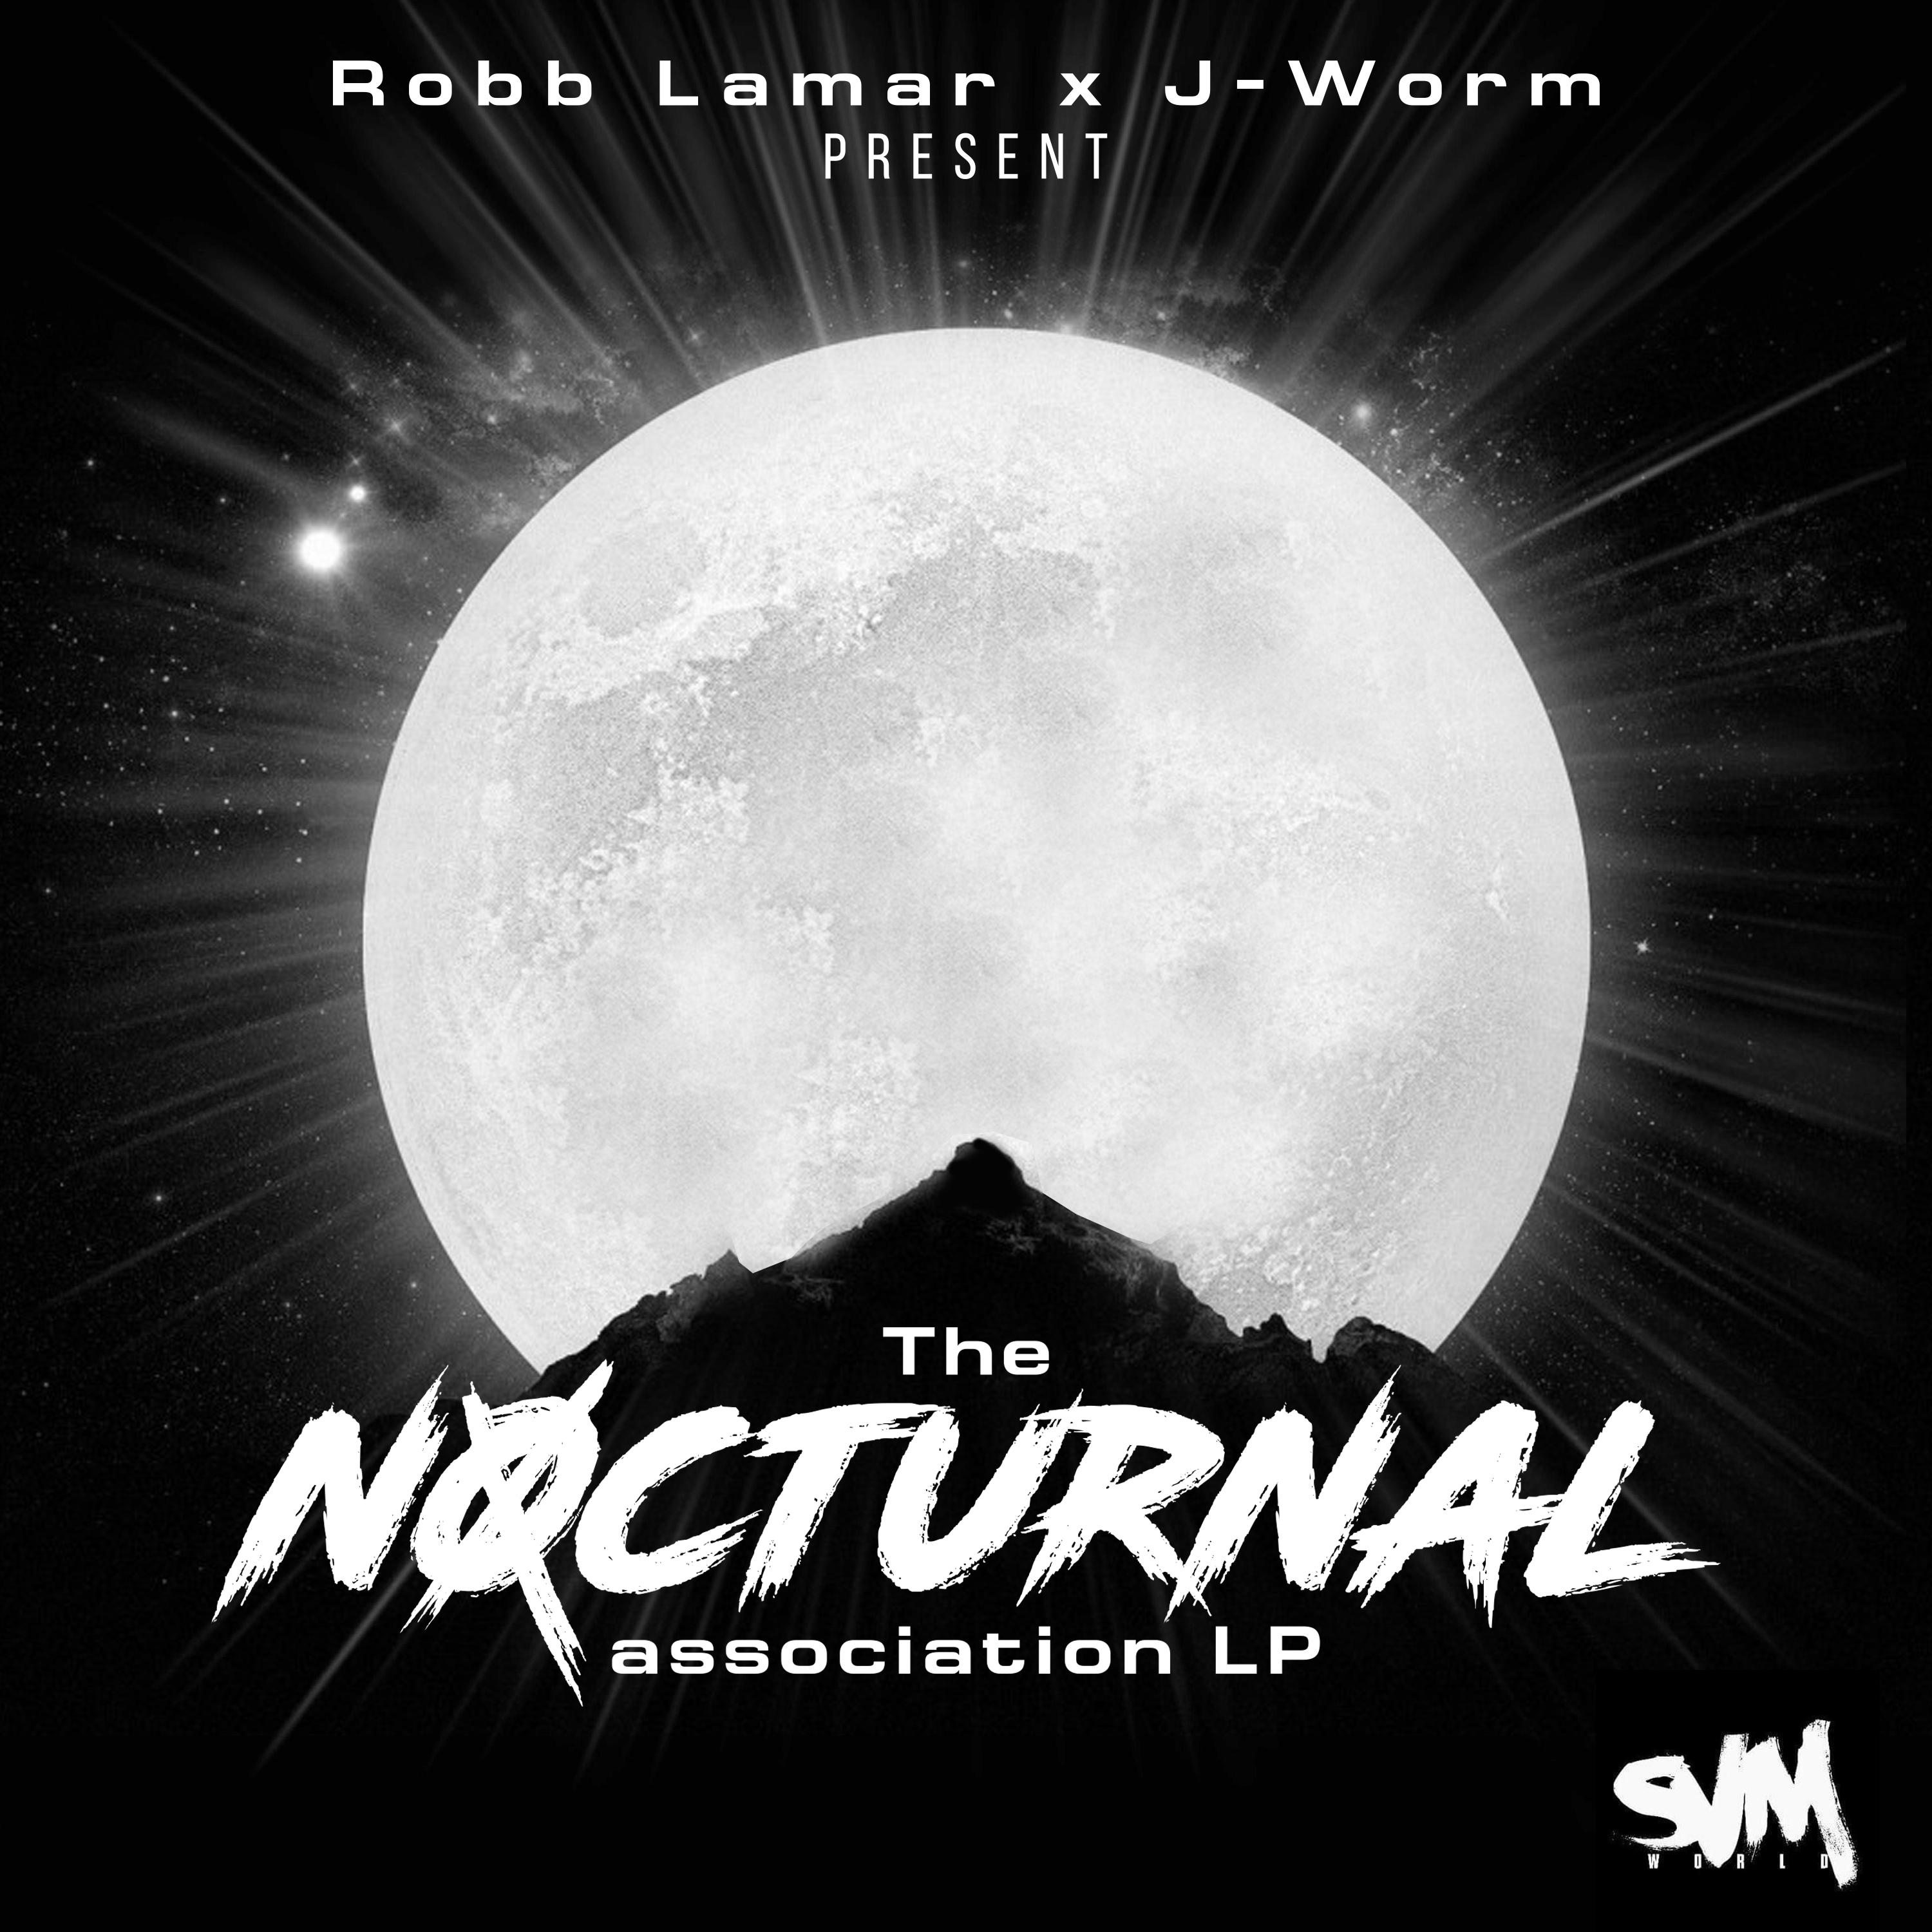 The Nocturnal Association LP